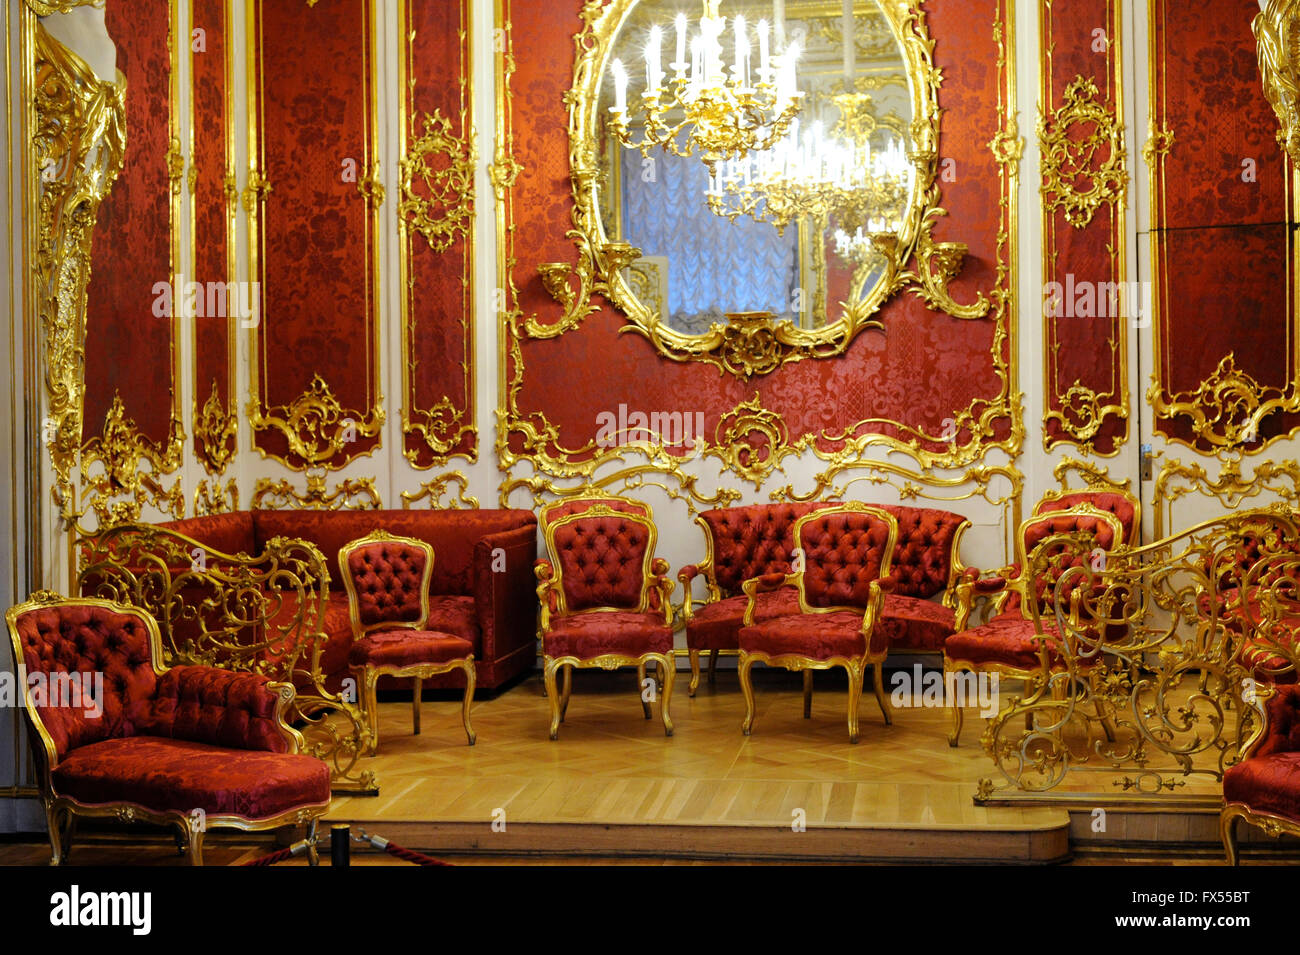 Le Musée de l'Ermitage. Le Boudoir. Saint Petersburg. La Russie. Banque D'Images